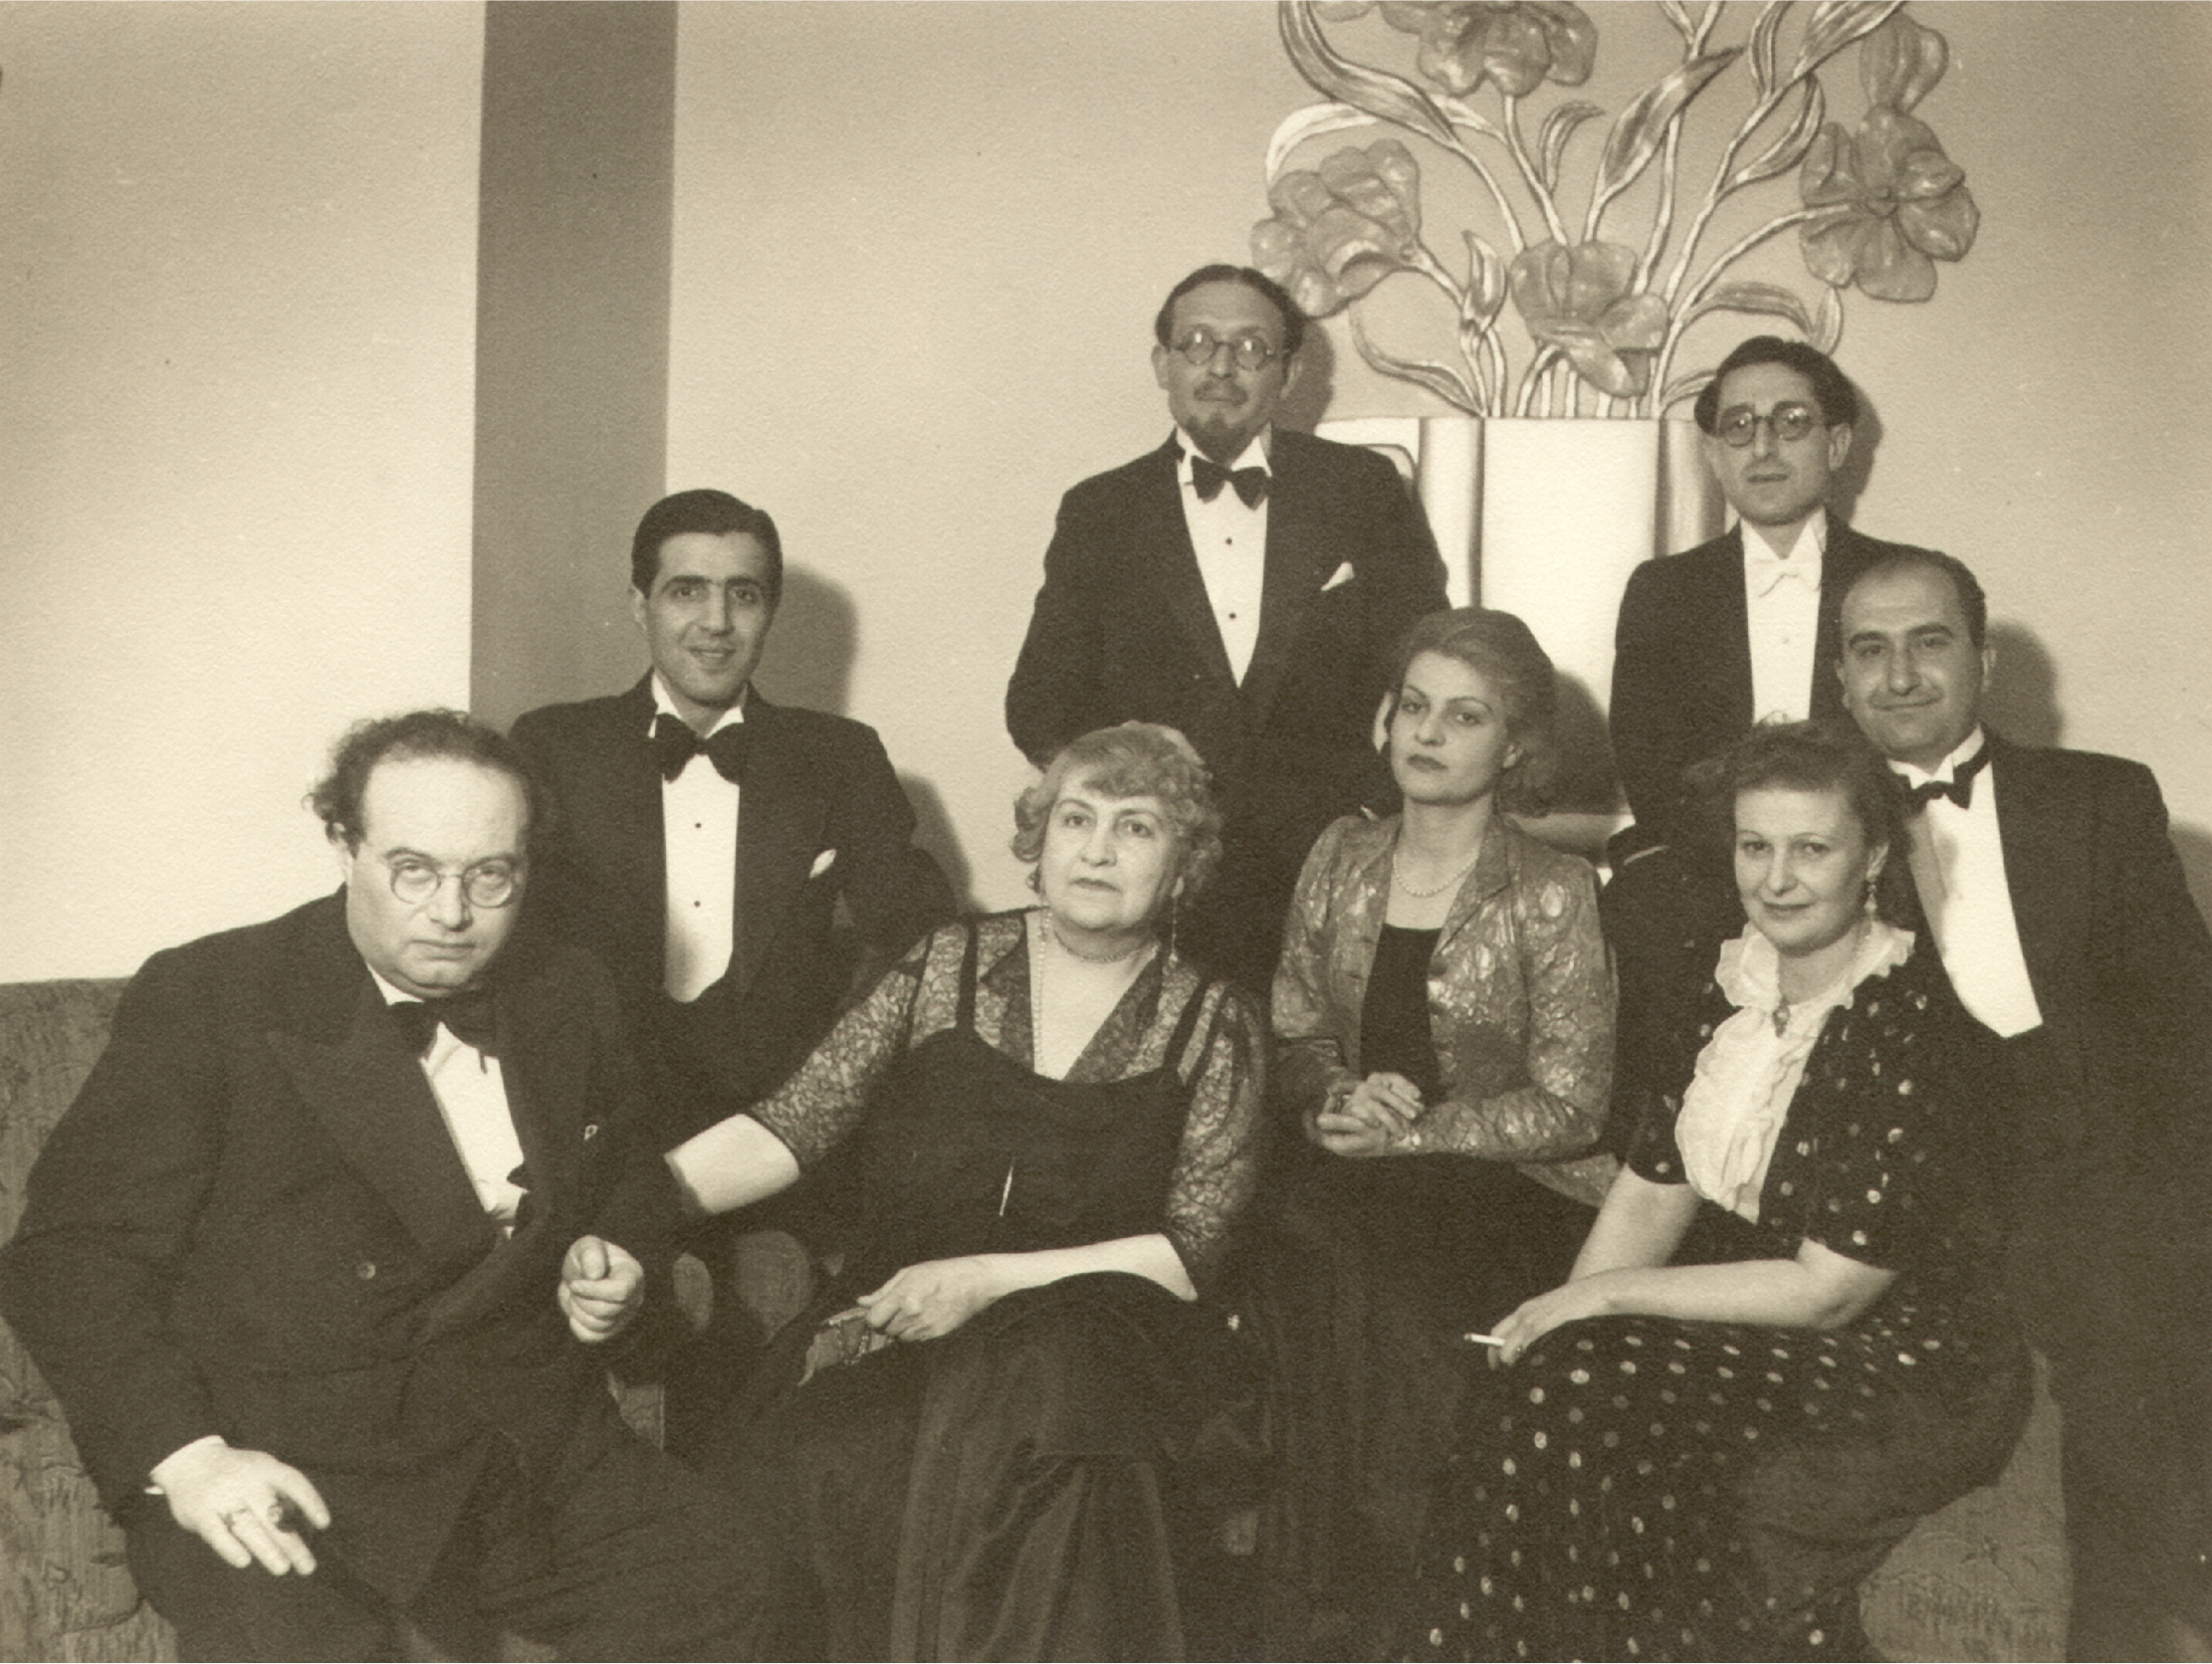 Ֆրանց Վերֆելը (ձախից առաջինը) եւ տիկինը անգլիահայ գաղութի մի խումբ ներկայացուցիչների հետ։ Աջից առաջինը՝ պրն. Գրիգոր Կիւլպէնկեան, Լոնդոն, 1936թ.։